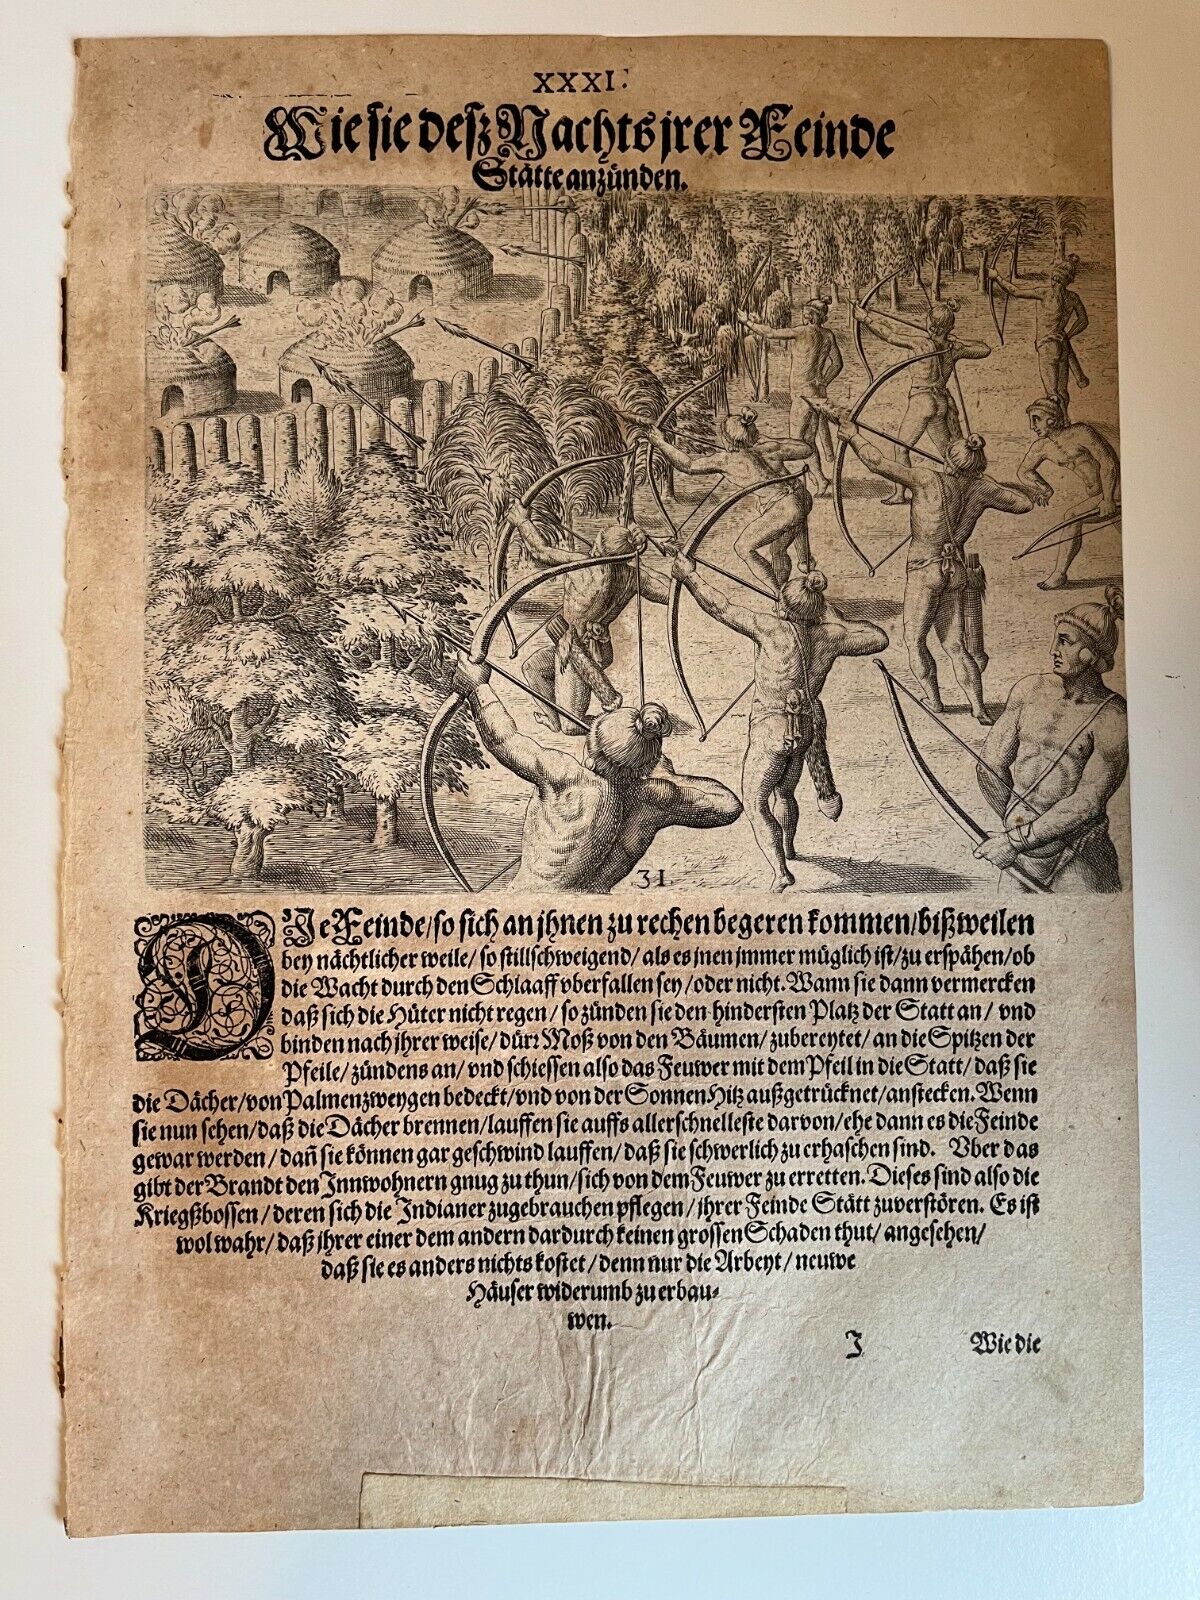 De Bry - Attack on a village- Florida - Original Engraving - 1591 - Le Moyne